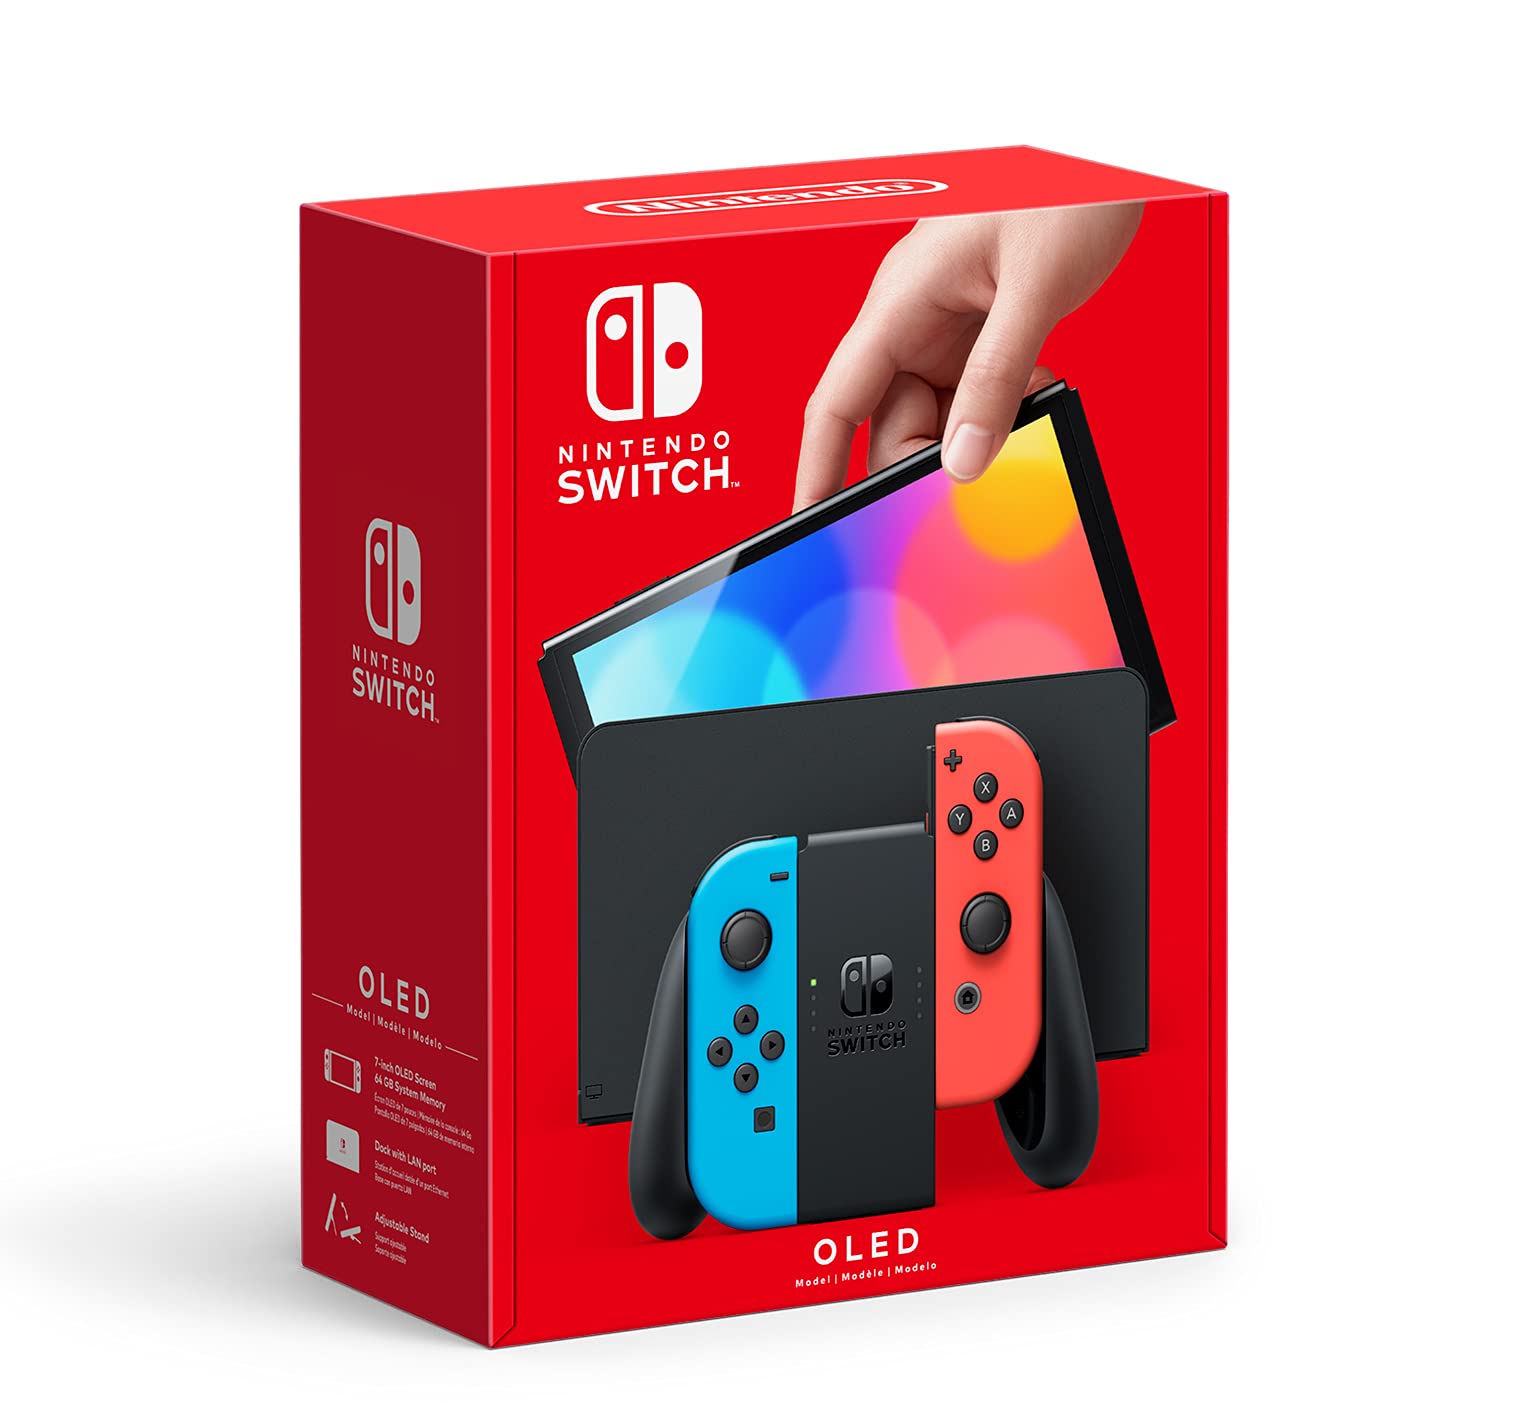 Nintendo Switch - OLED model $349.99